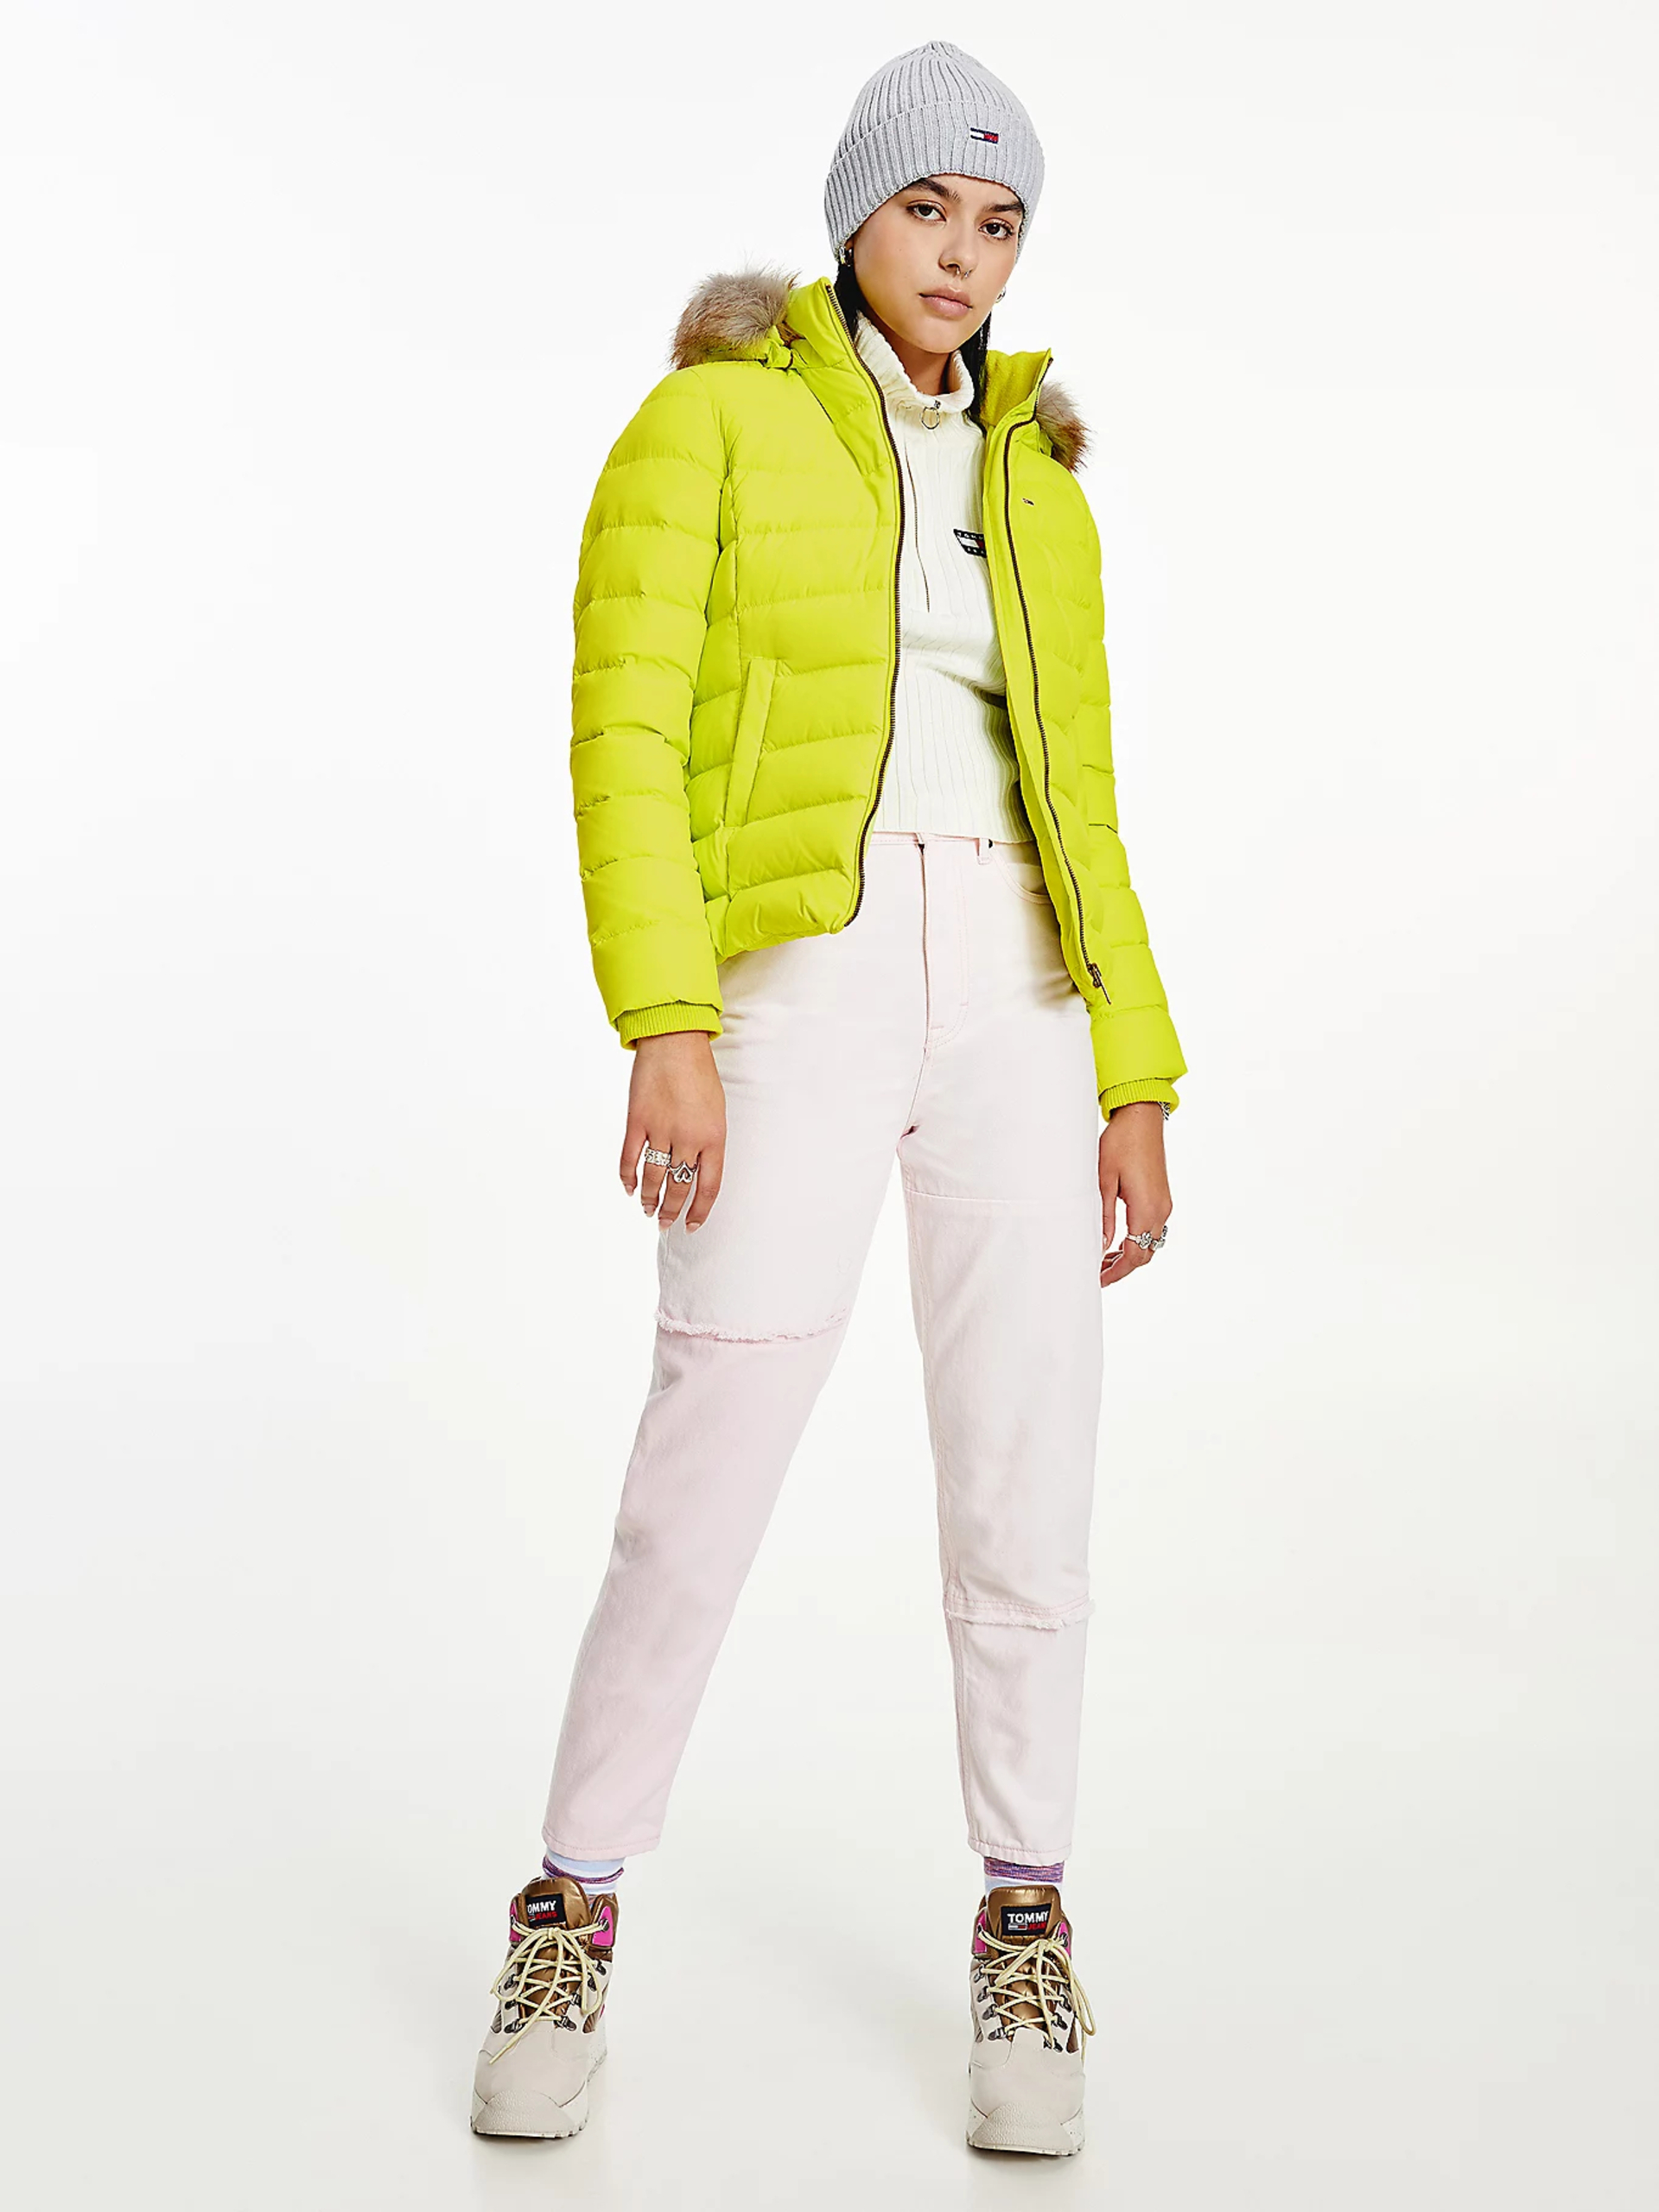 Tommy Jeans dámská neonová zimní bunda - XS (LSE)